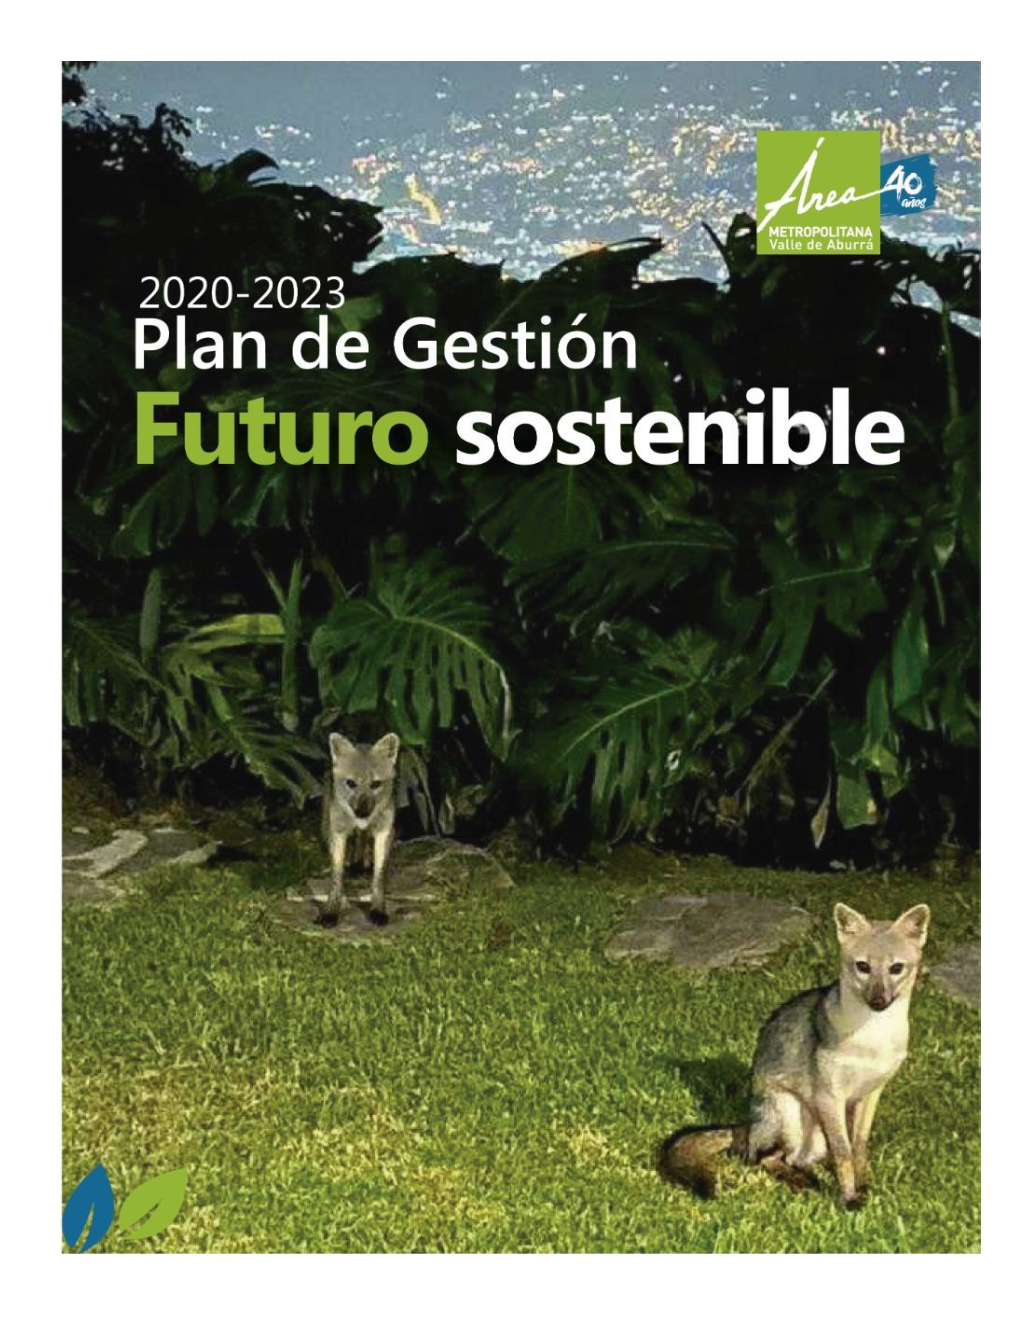 Plan De Gestión 2020-2023 “Futuro Sostenible